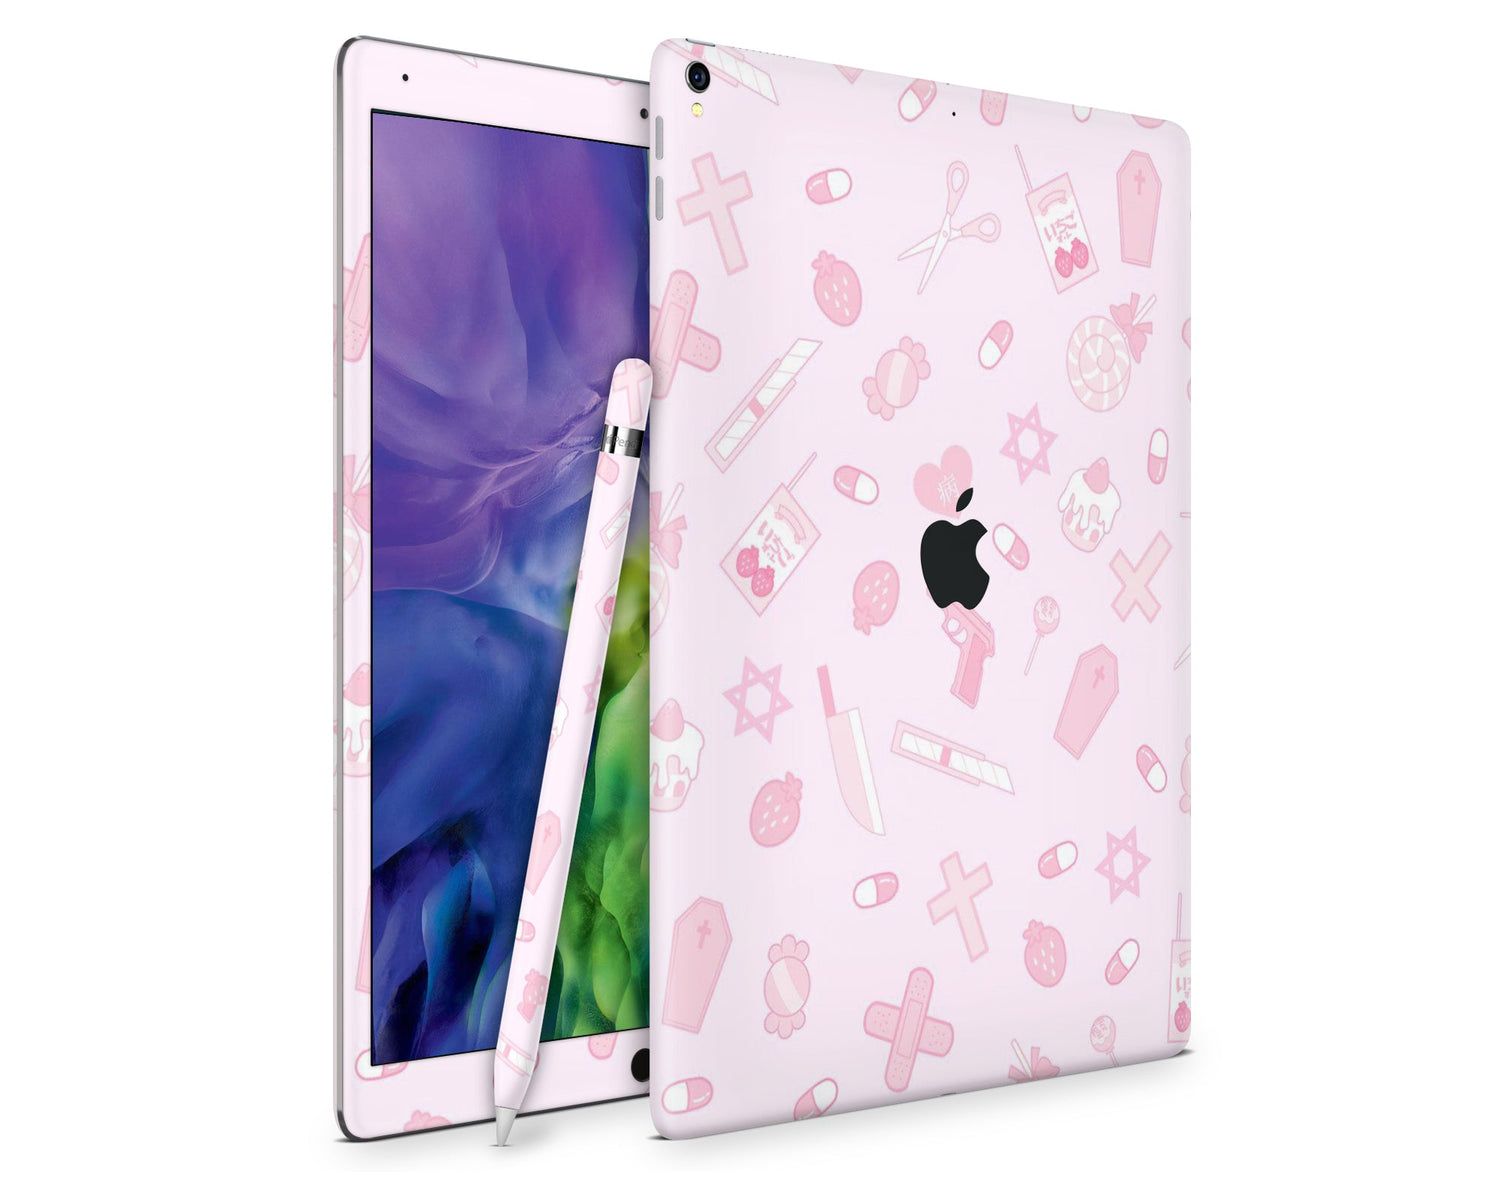 Lux Skins iPad I Love Pink iPad Pro 12.9" Gen 5 Skins - Cute  Skin